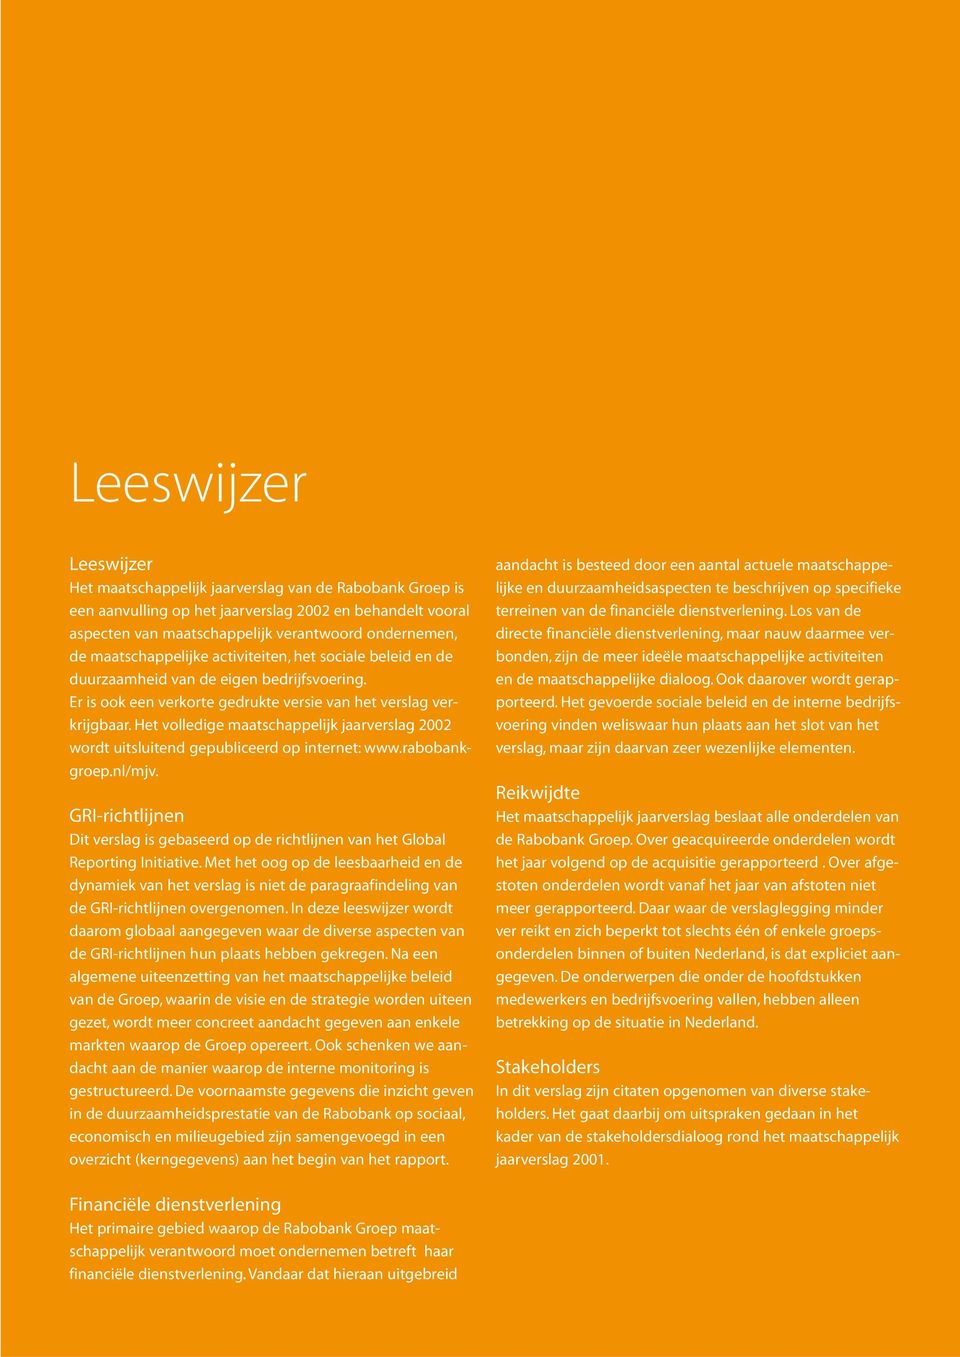 Het volledige maatschappelijk jaarverslag 2002 wordt uitsluitend gepubliceerd op internet: www.rabobankgroep.nl/mjv.